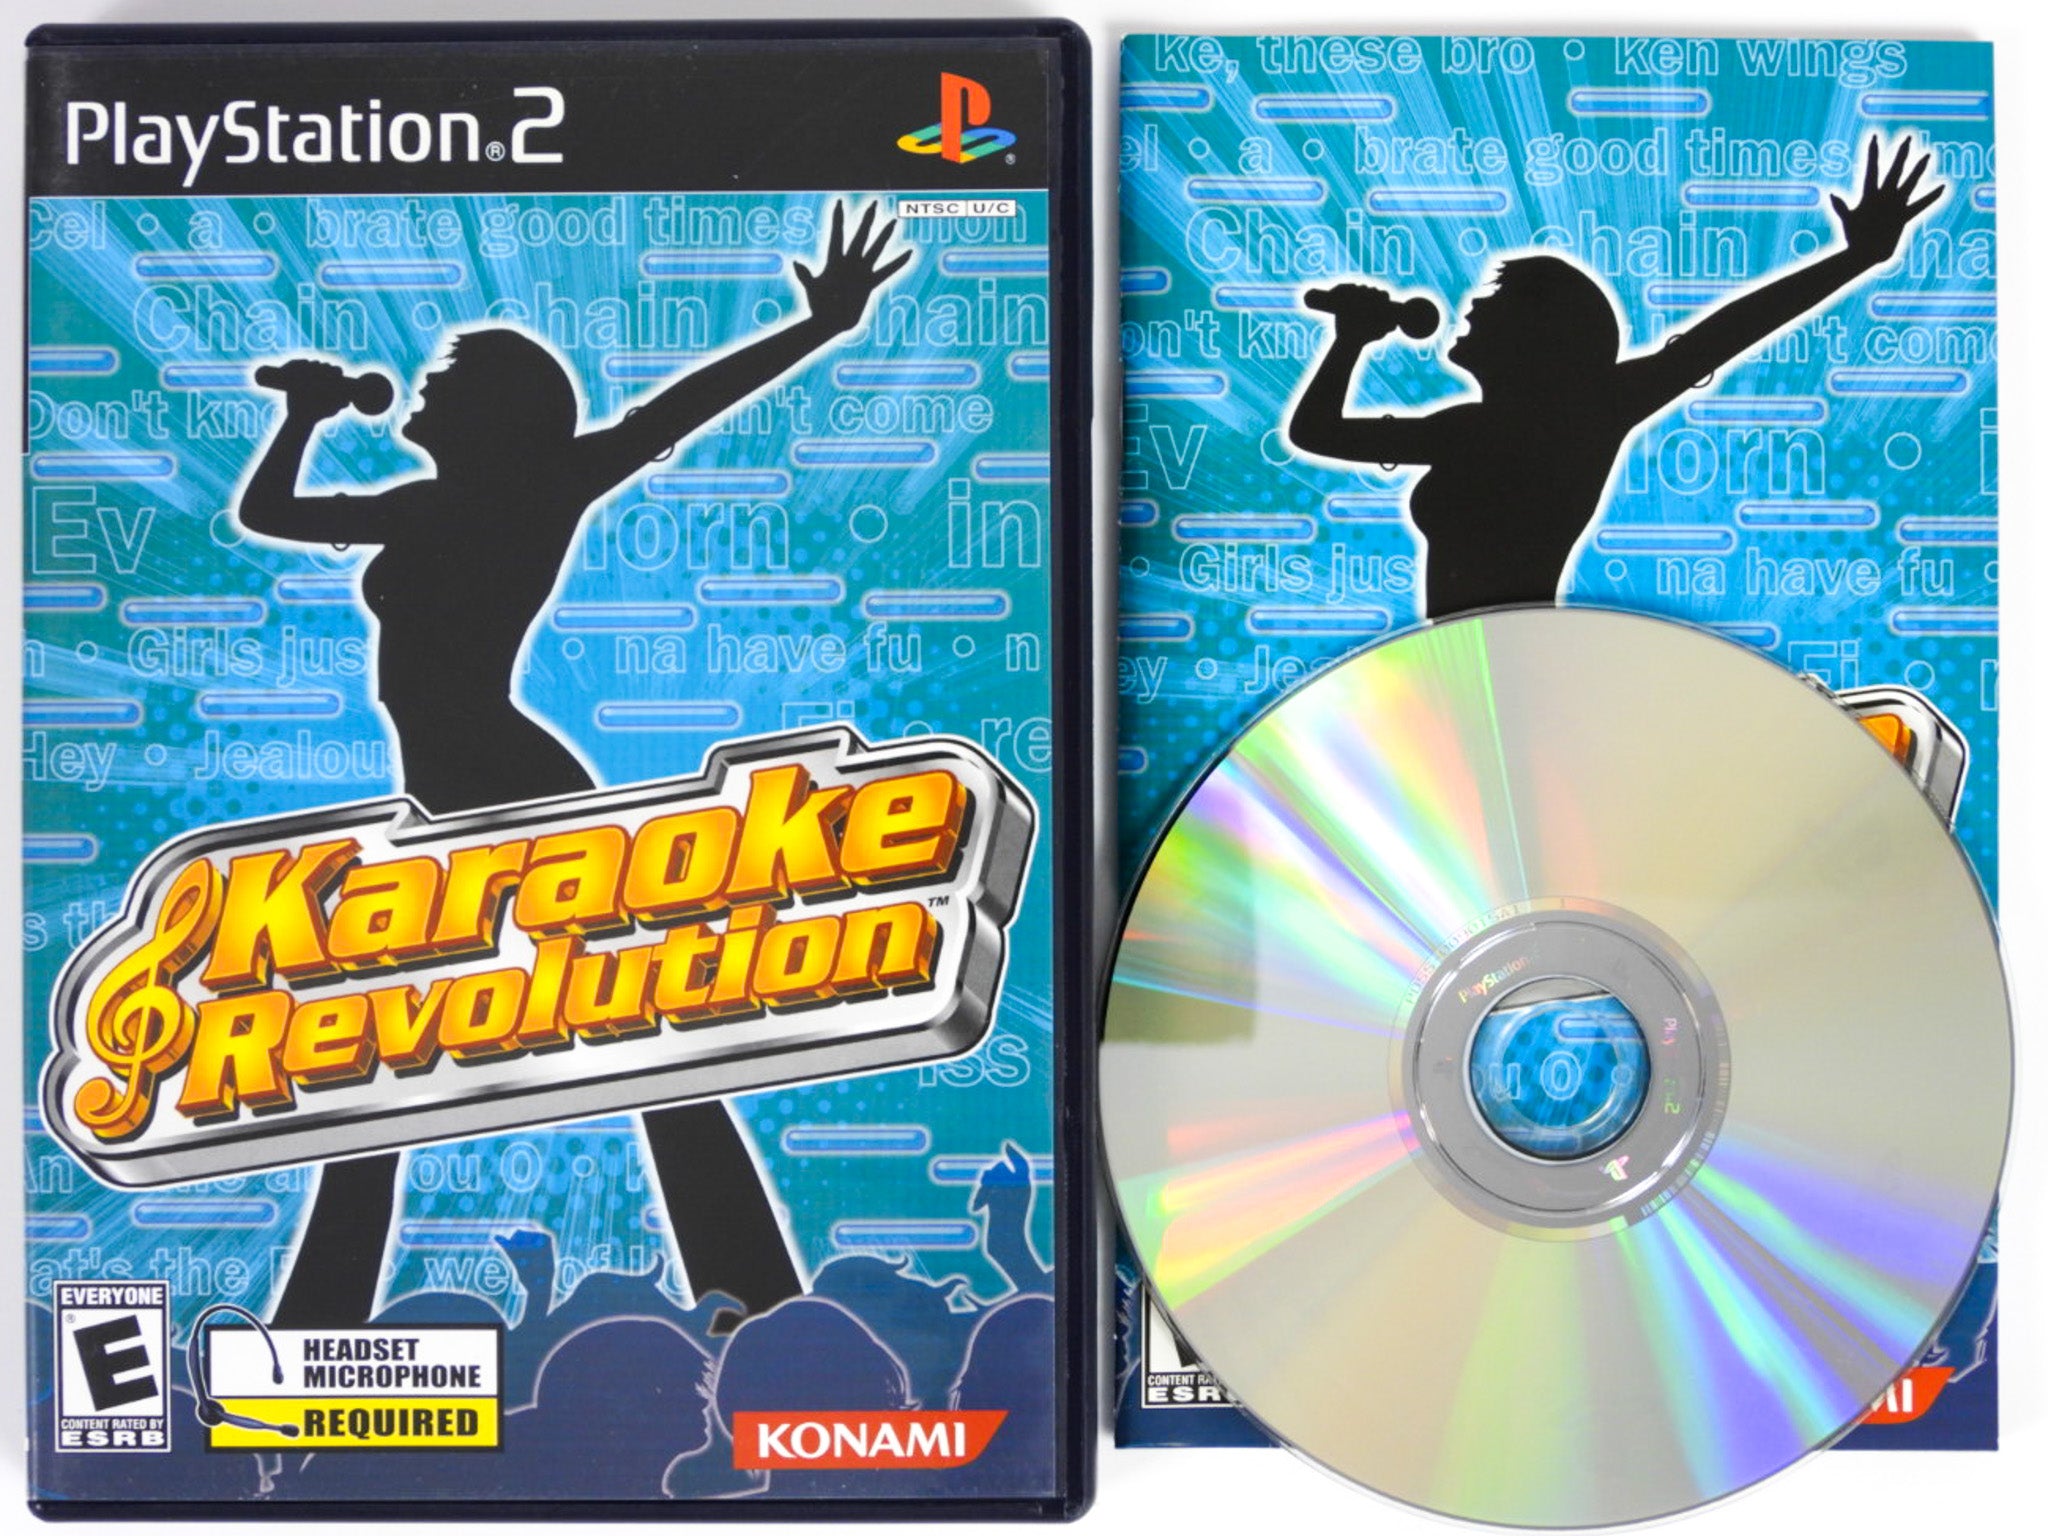 Karaoke Revolution (Playstation 2 / PS2) – RetroMTL